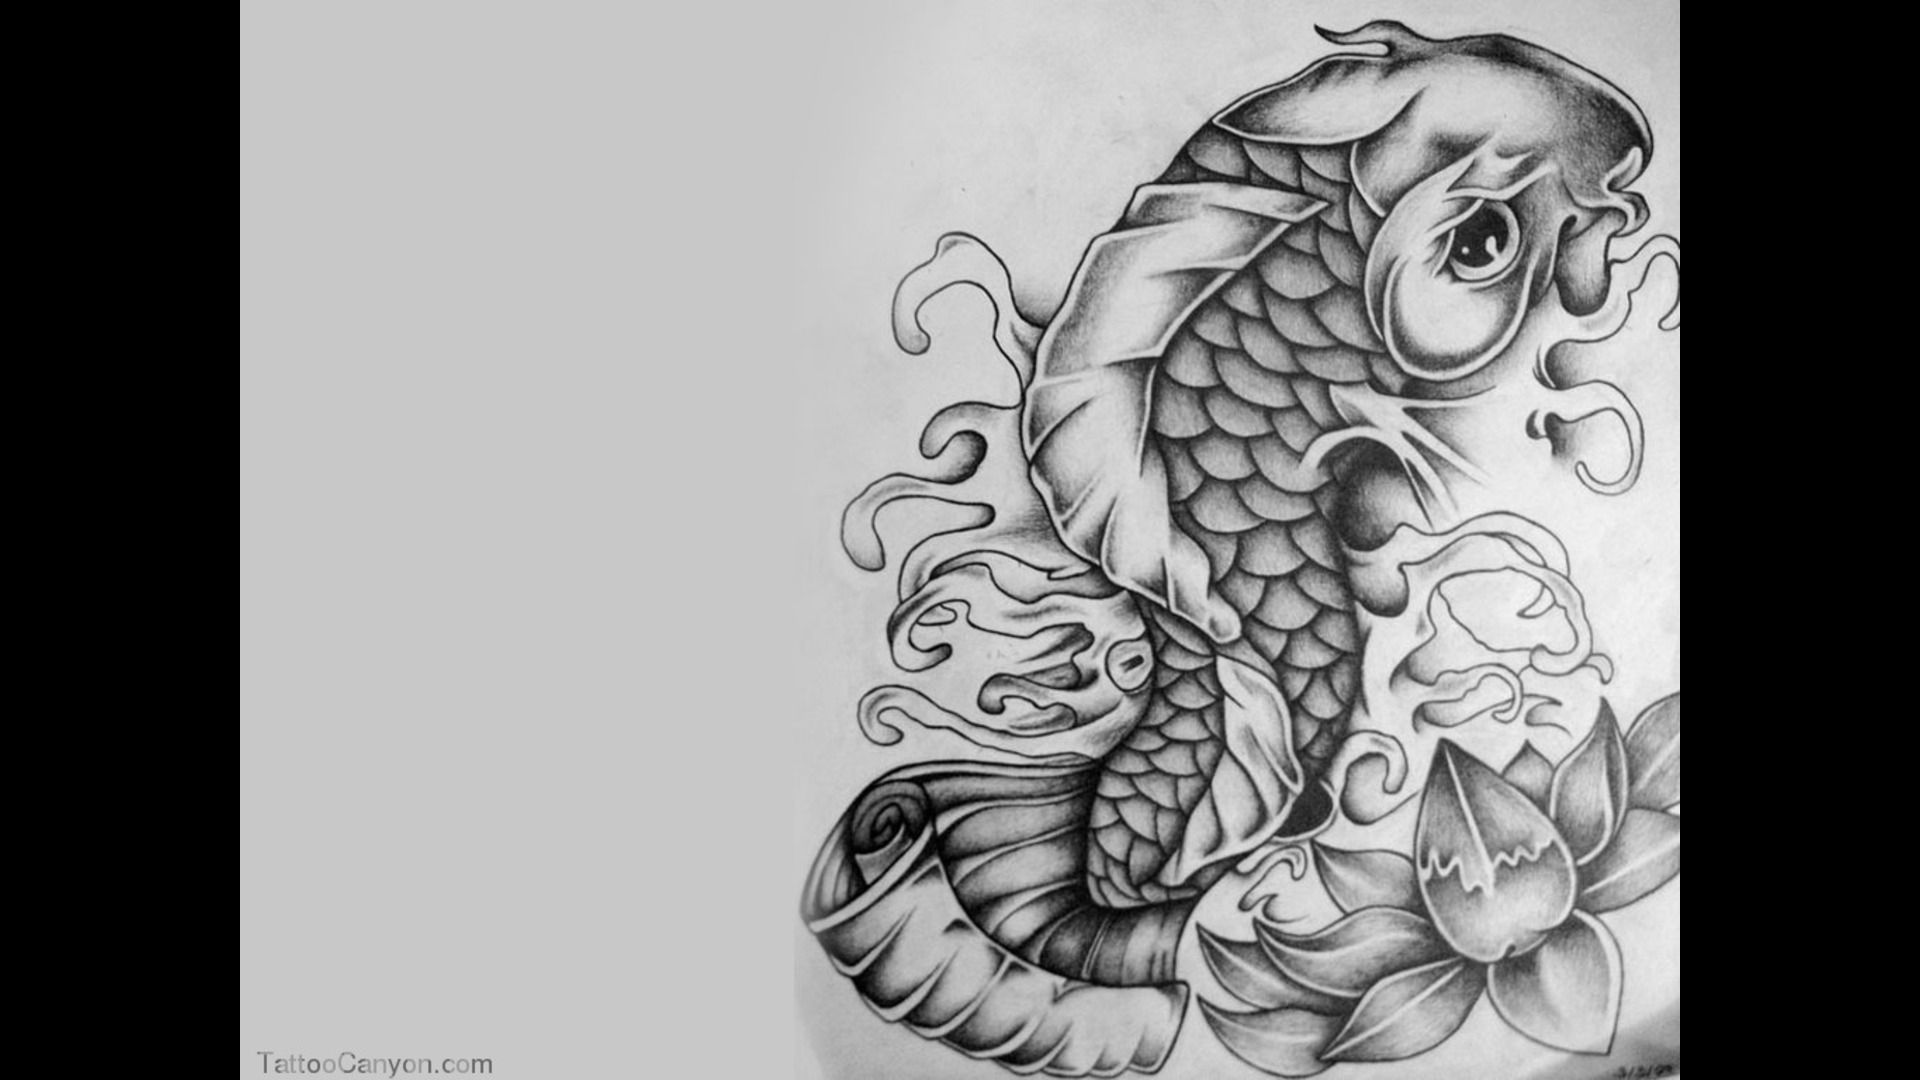 17271 koi fish tattoo wallpaper tattoo design 1920×1080 ...